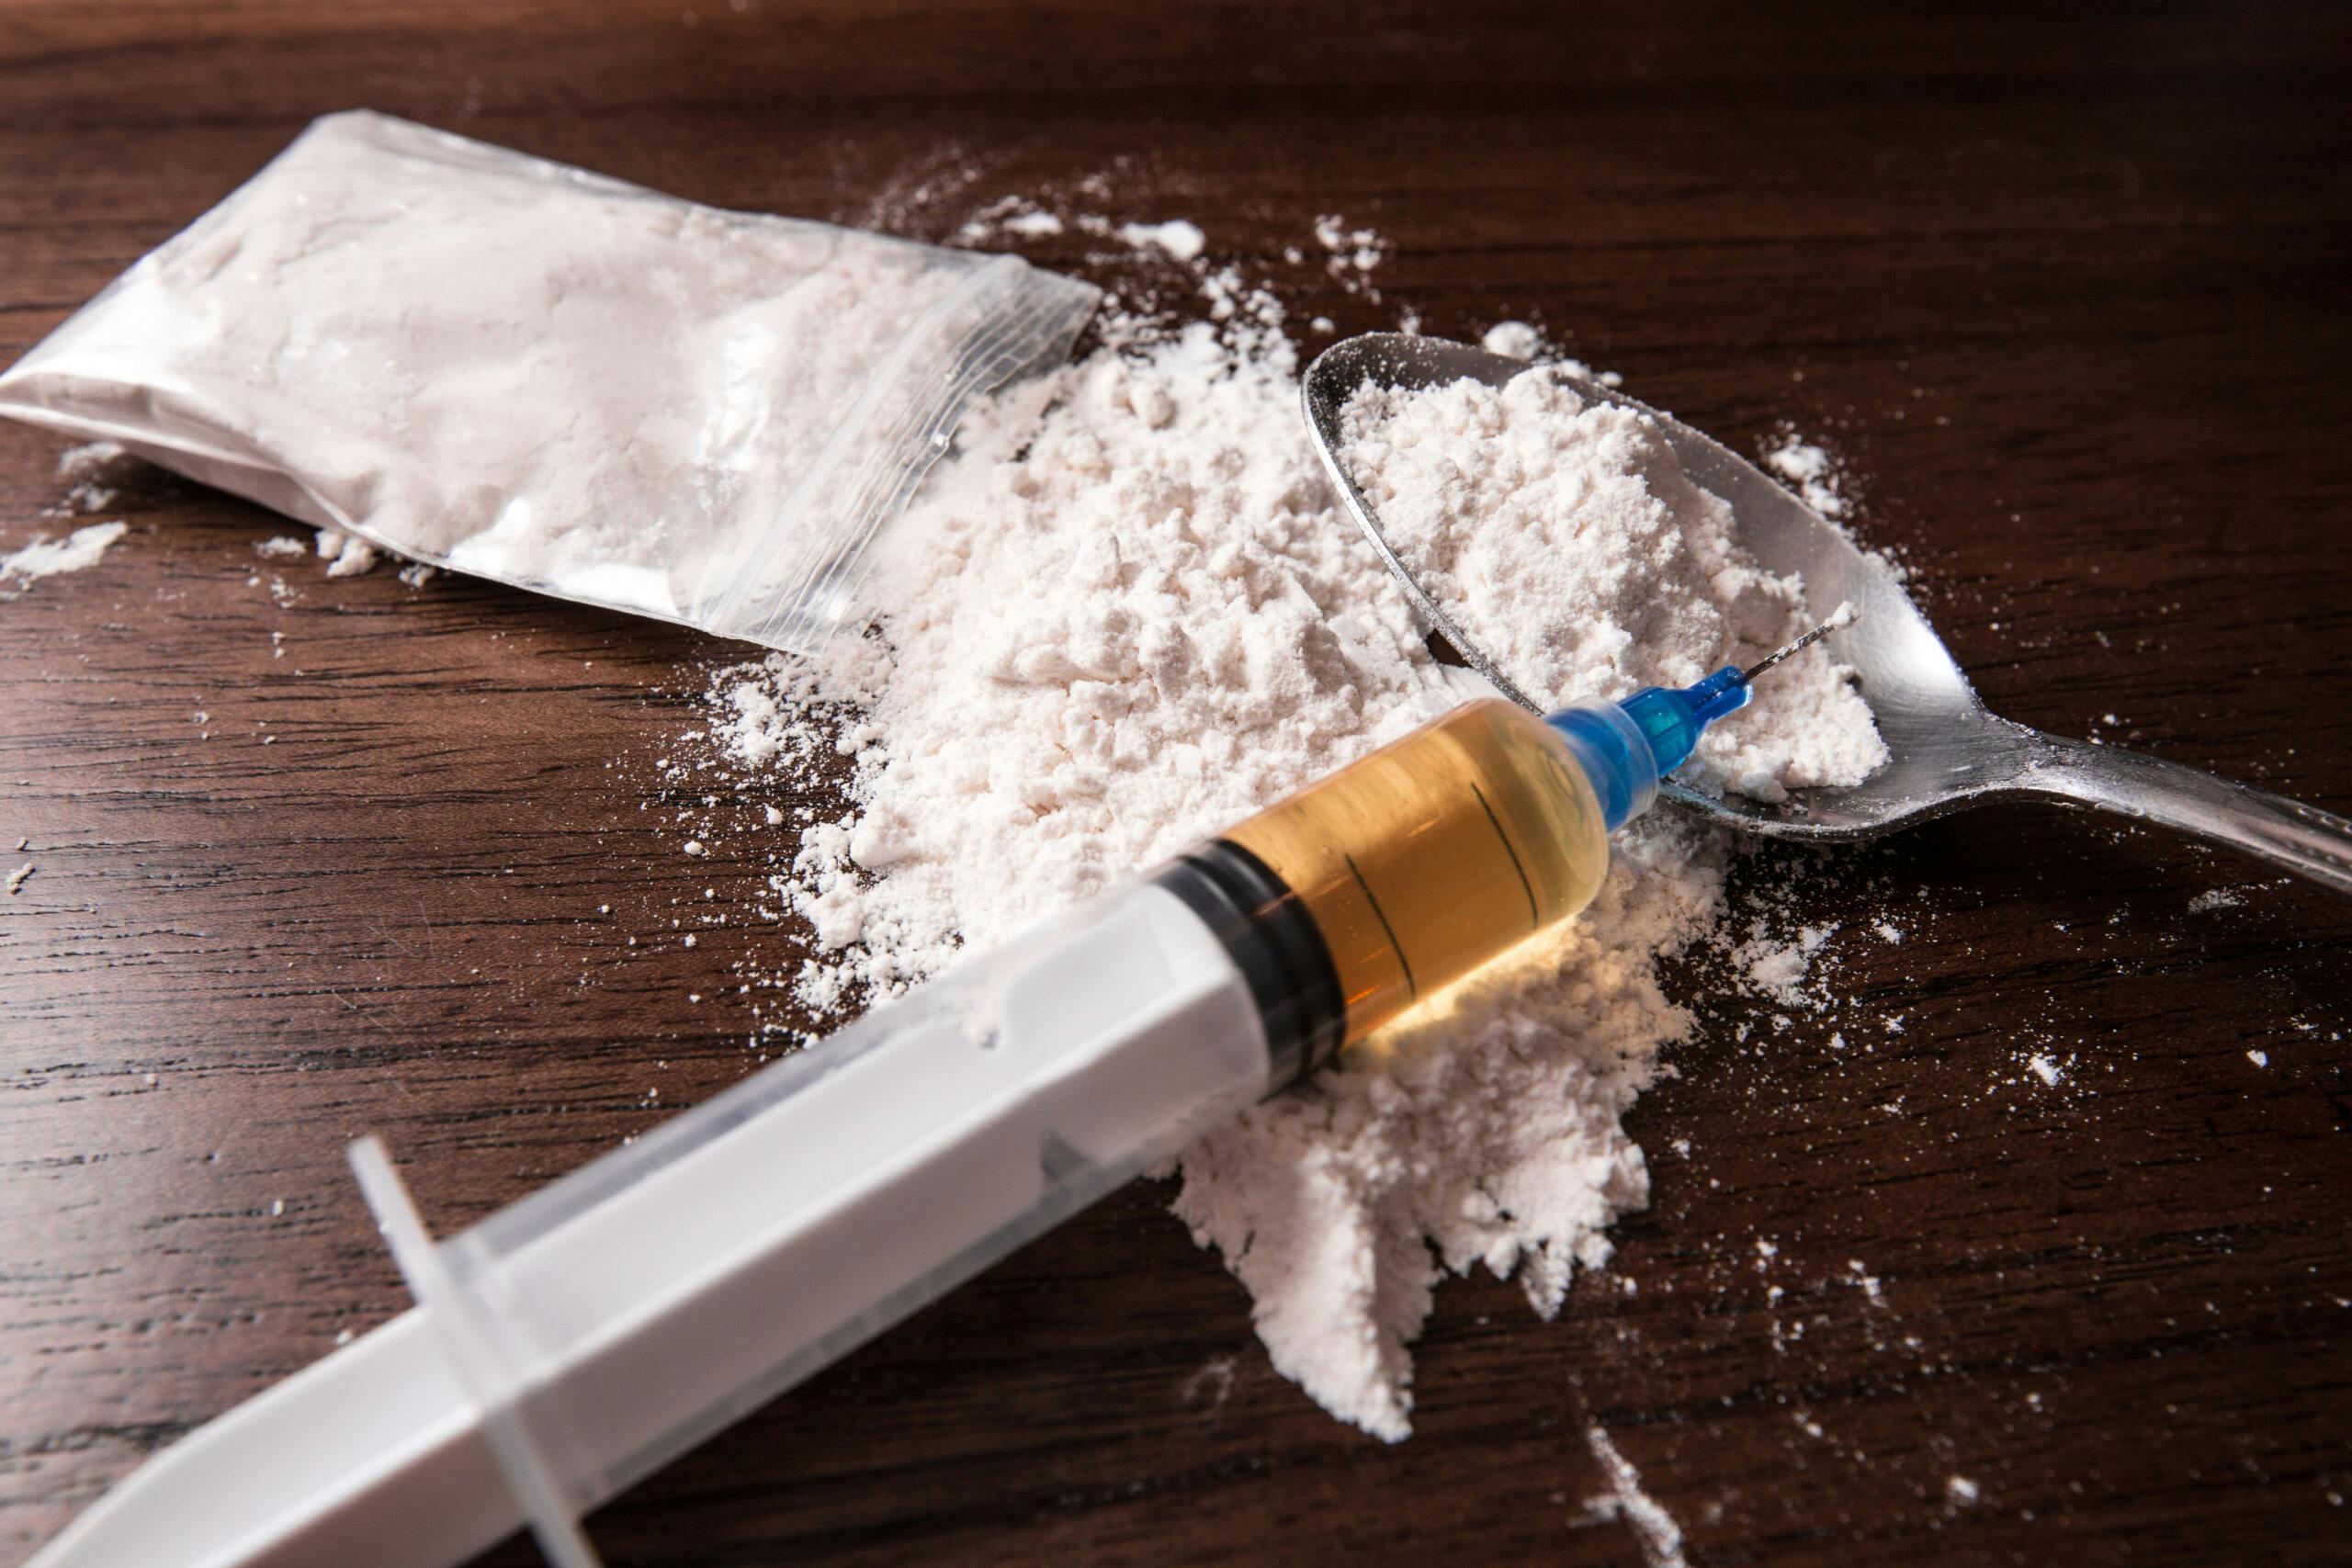 crack cocaine powder needle spoon